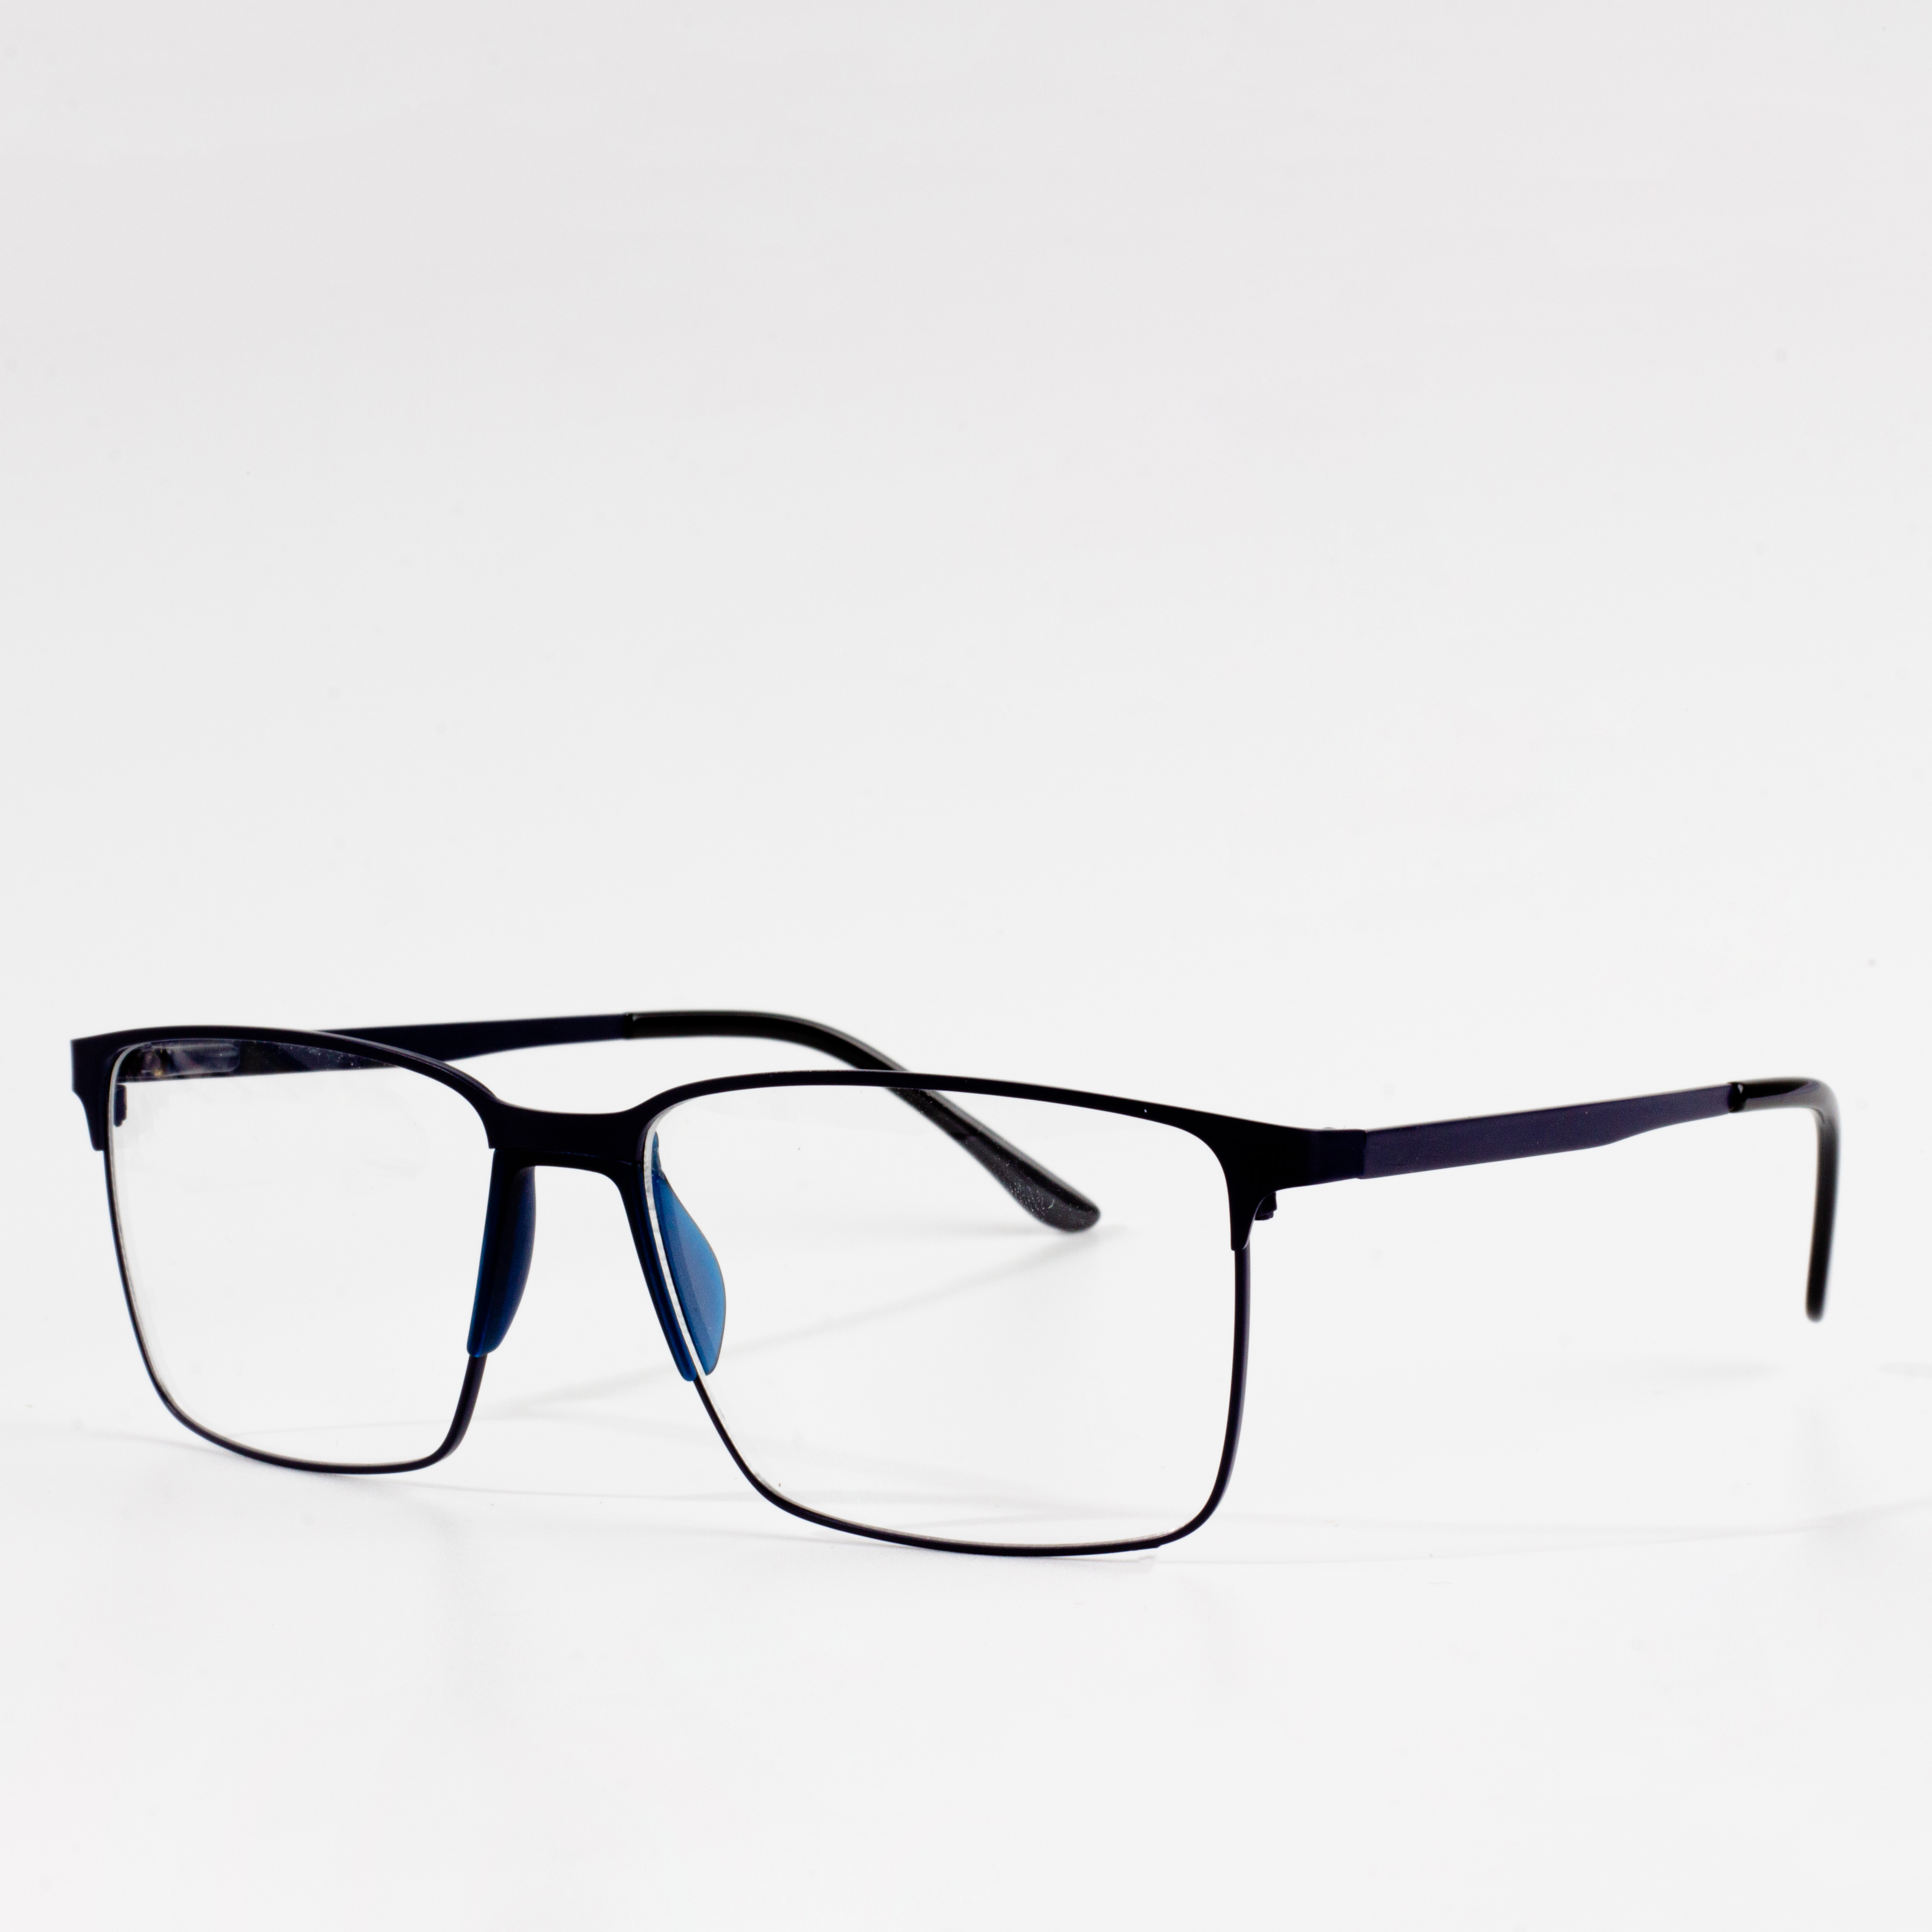 Designer-Brillengestelle für Männer